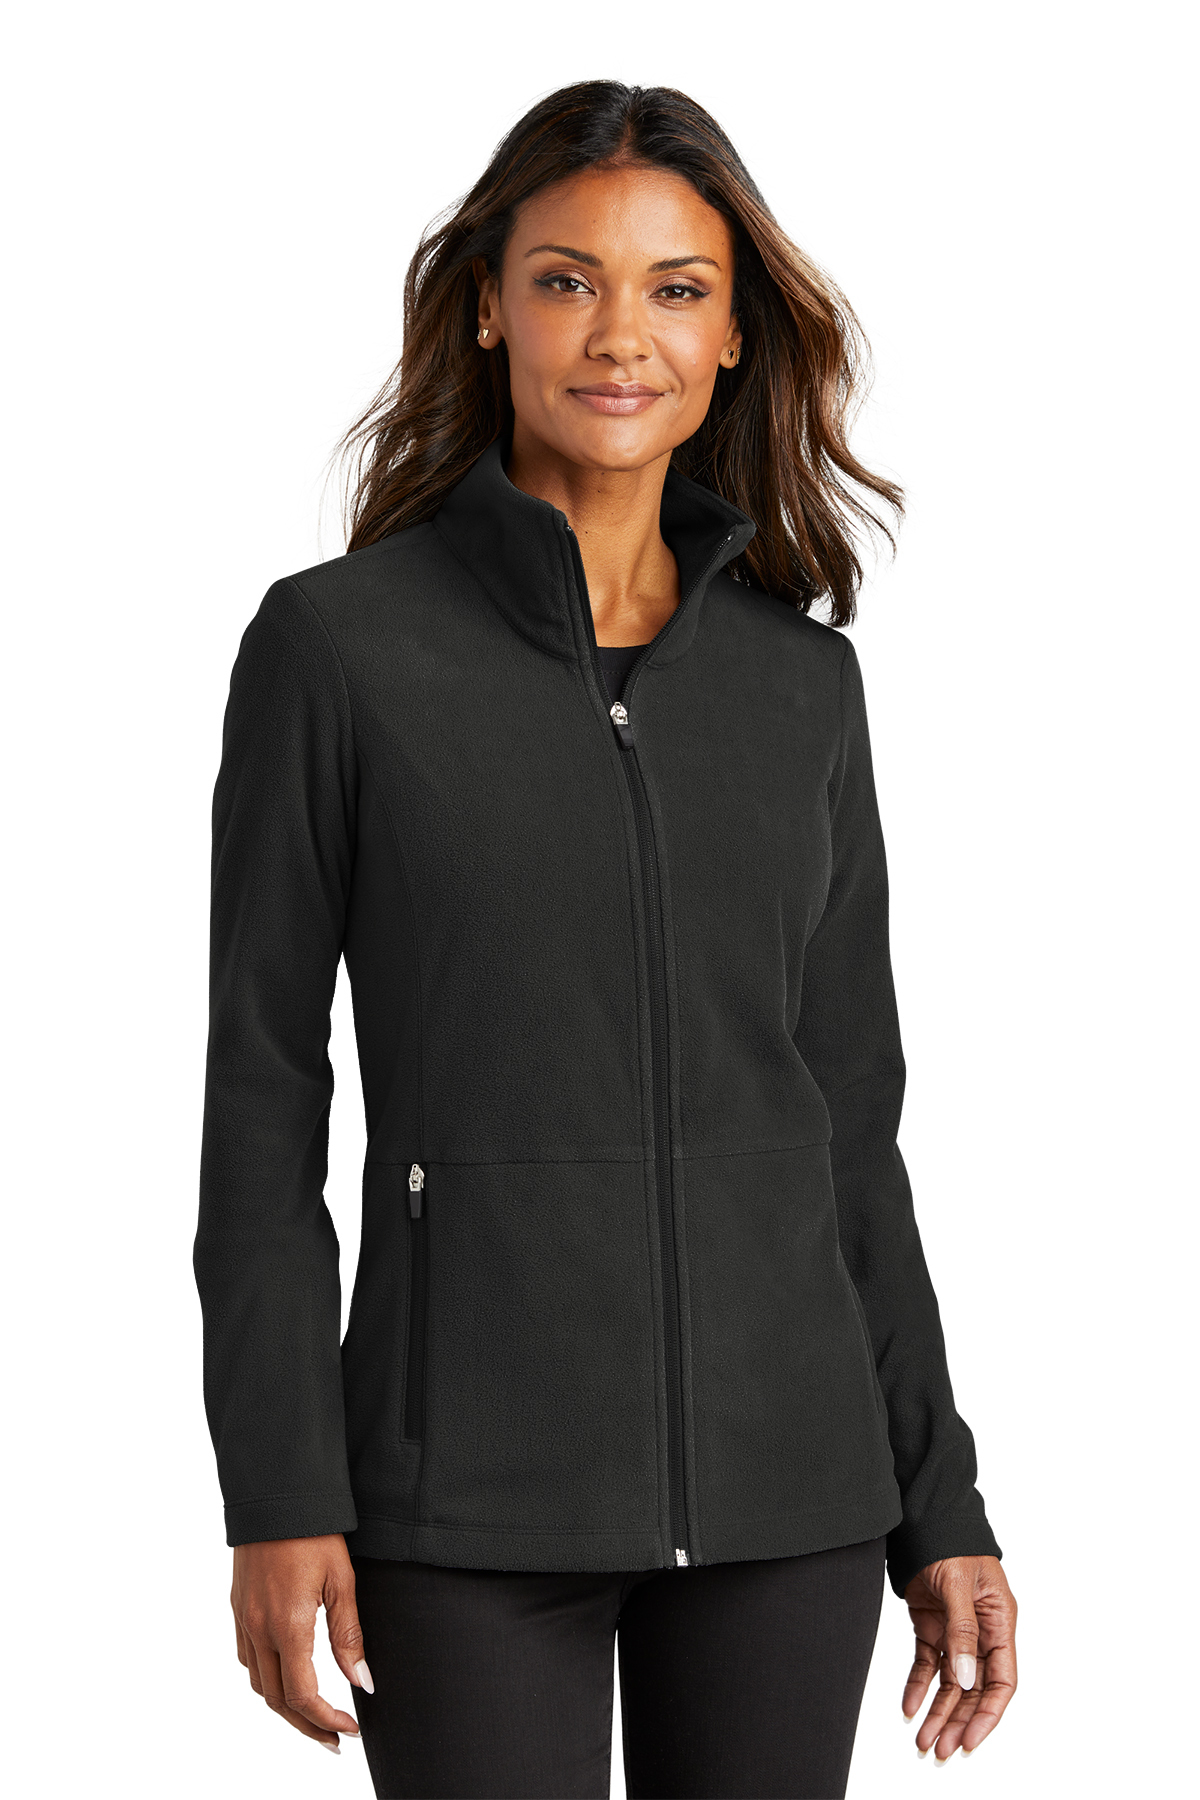 Port Authority® Ladies Accord Microfleece Jacket